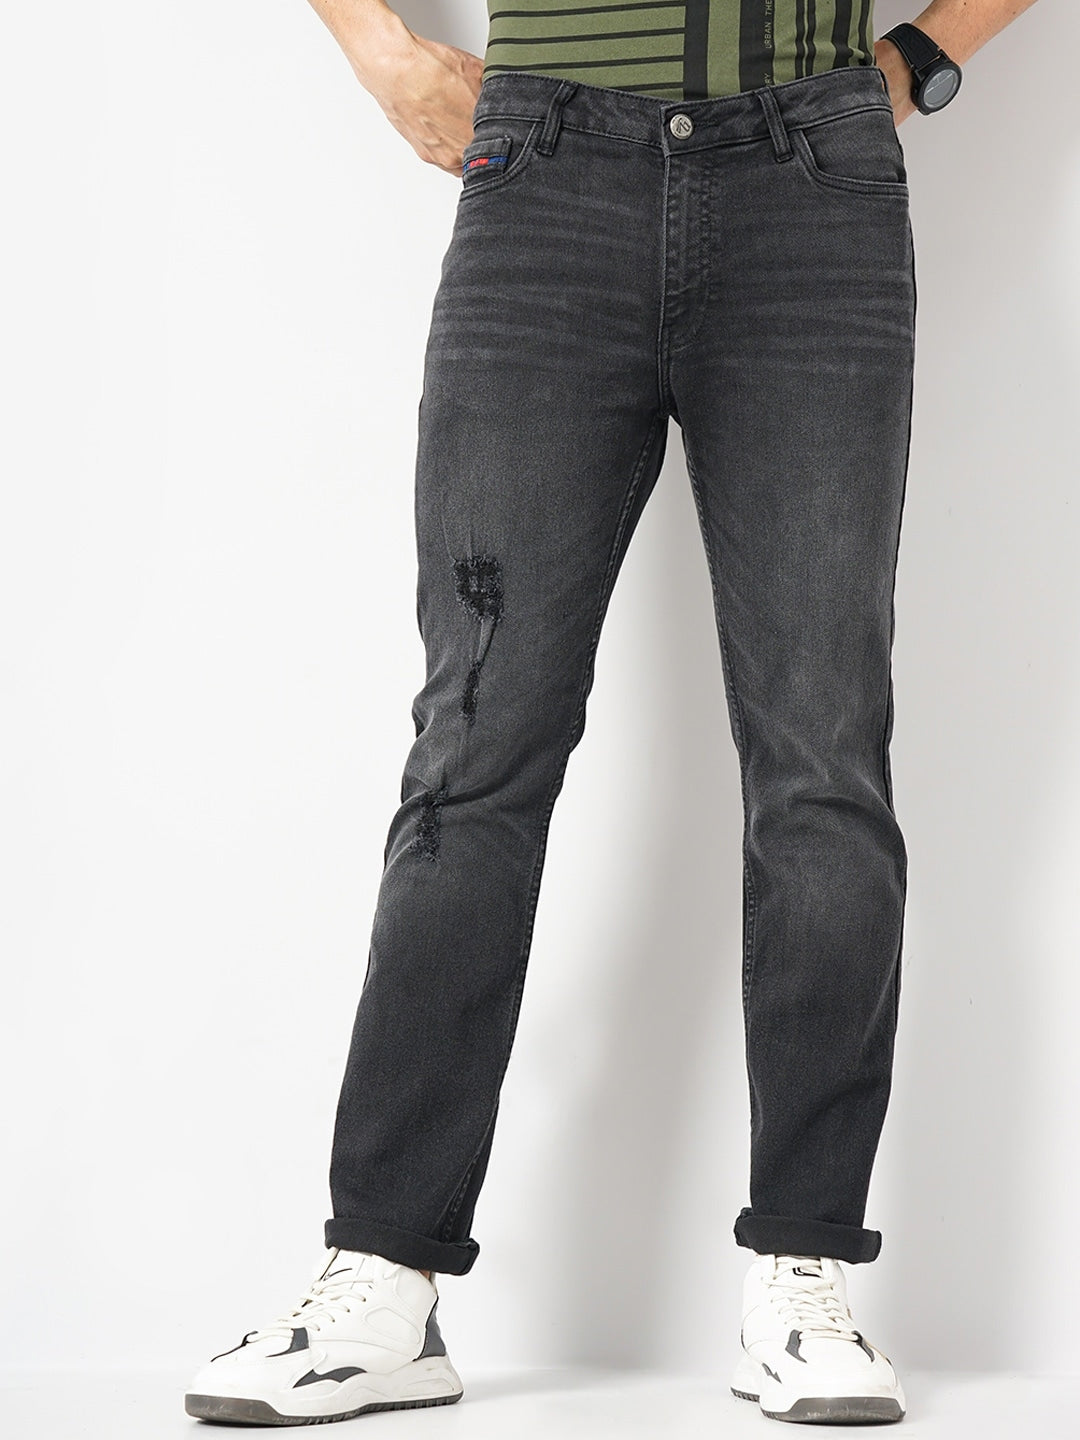 Shop Men Bootcut Jeans Online.